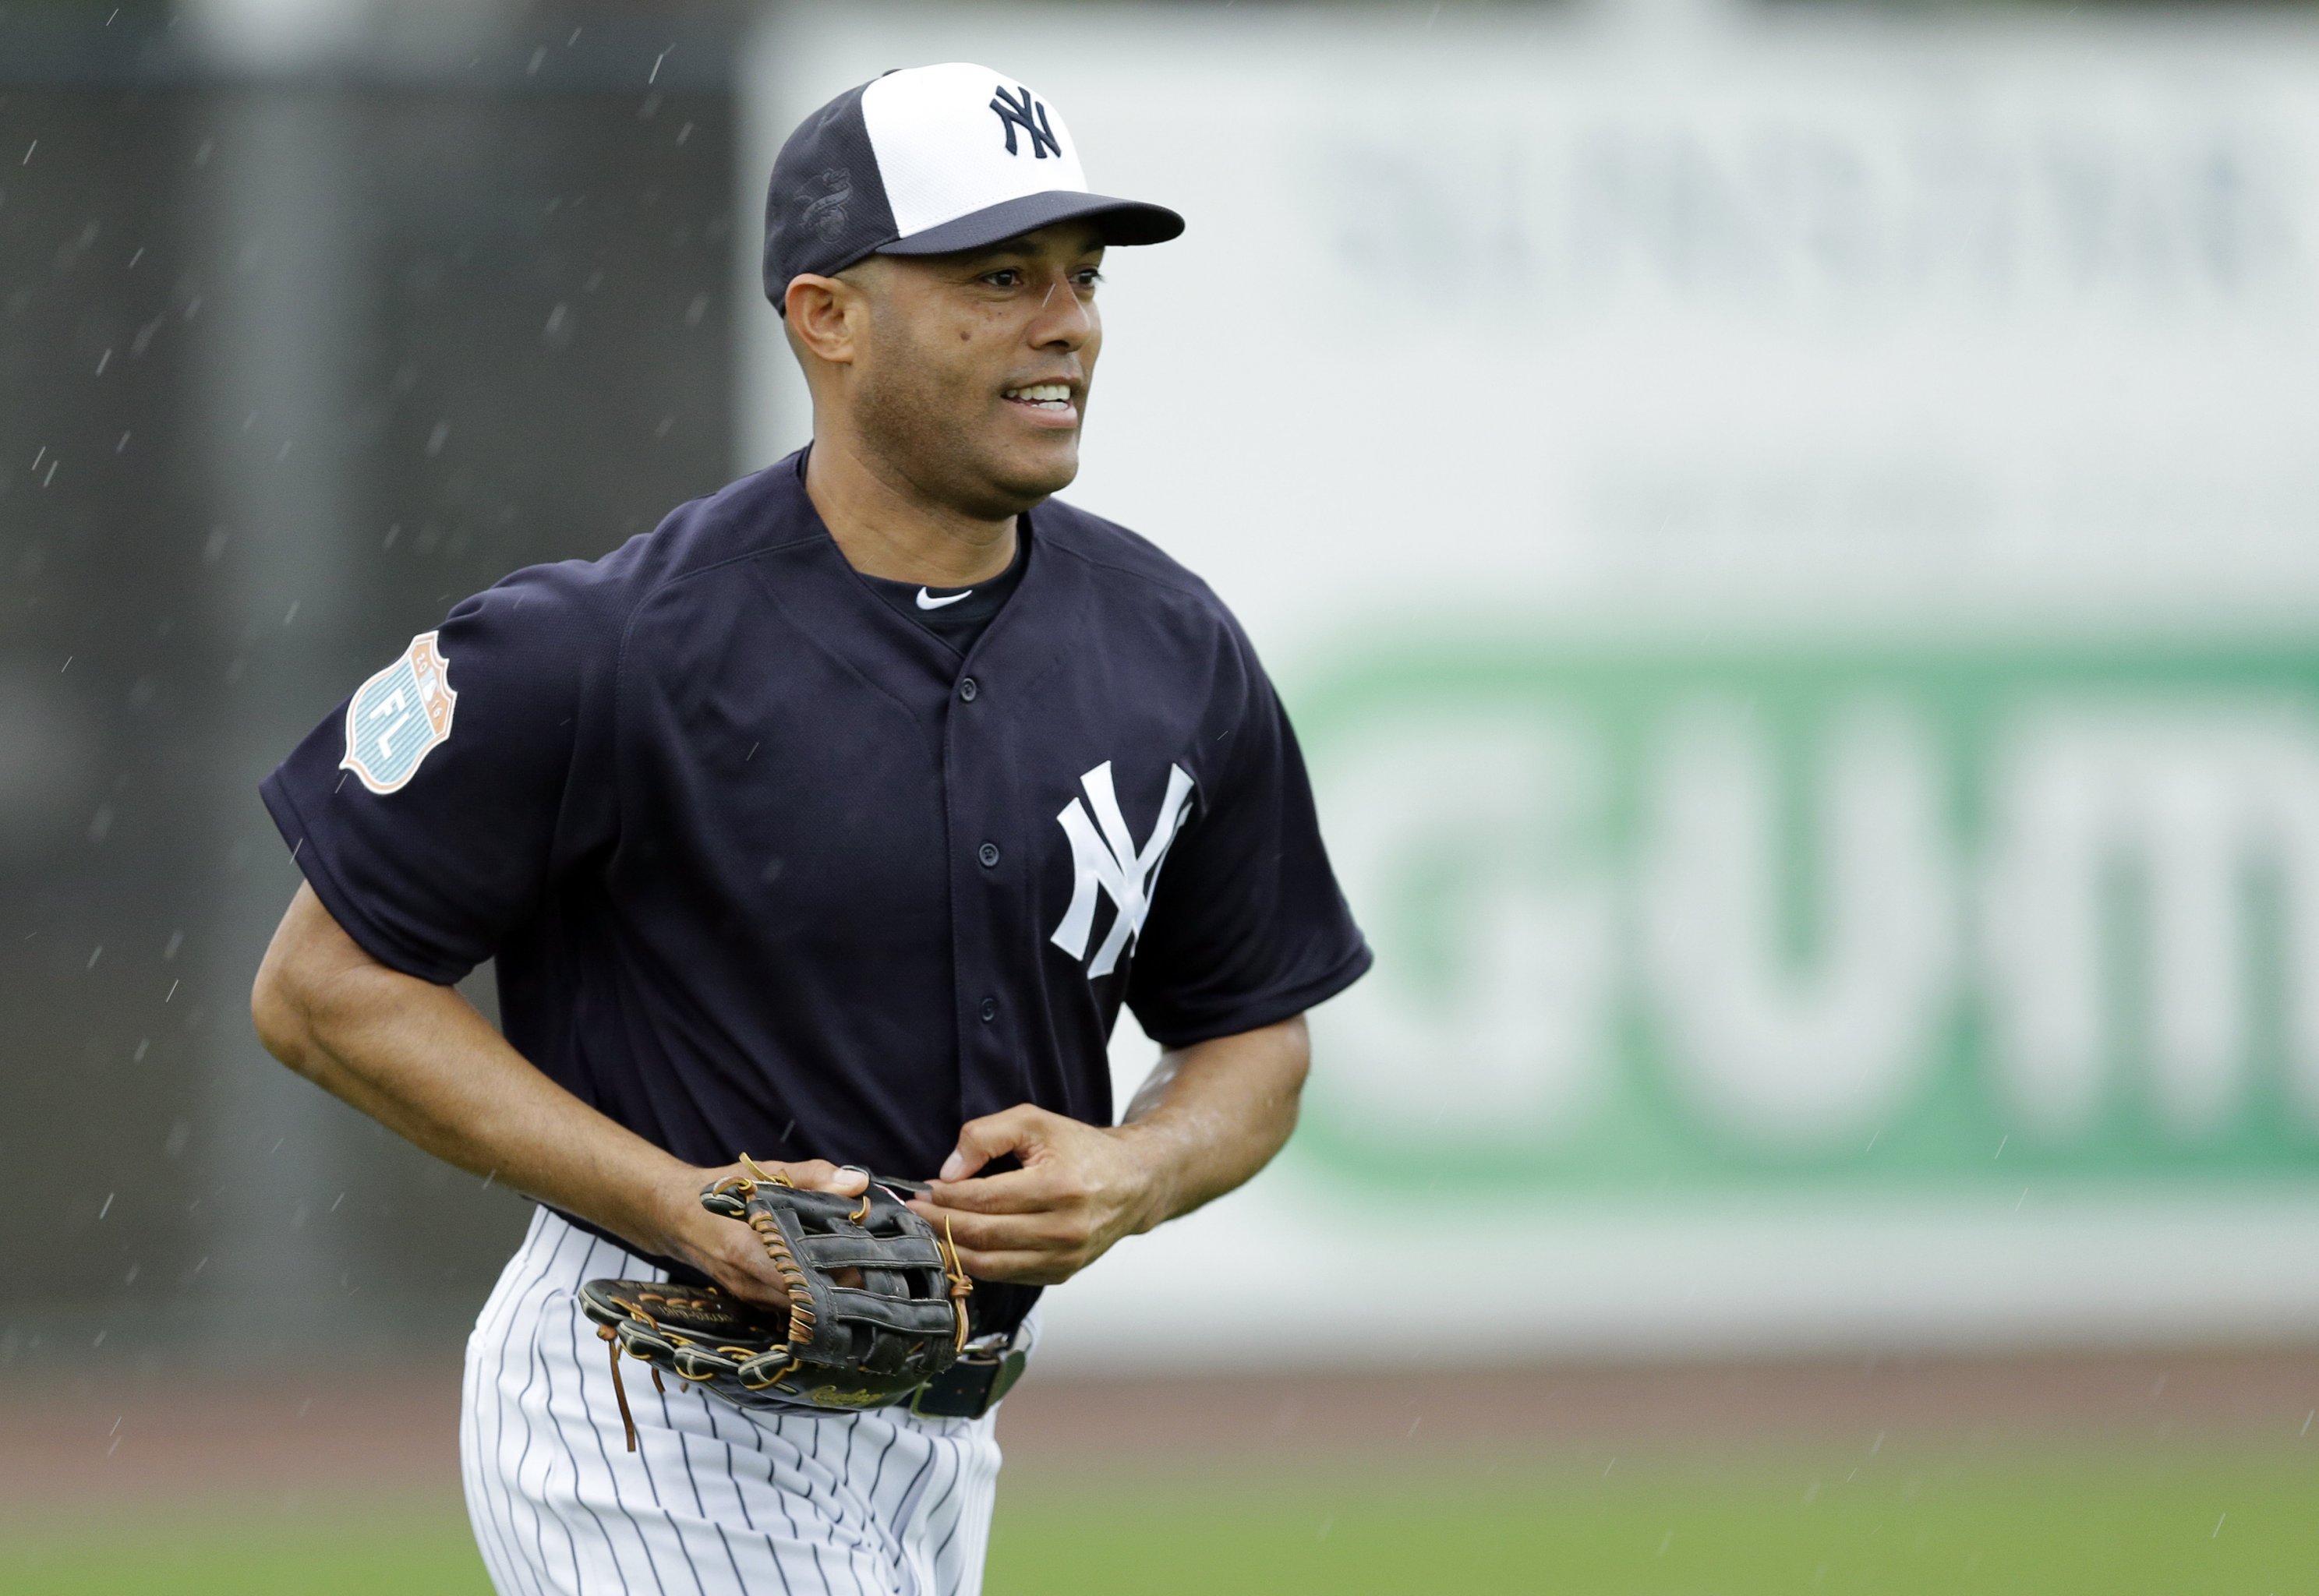 Manny Ramirez looking to make baseball comeback in Taiwan at age 47